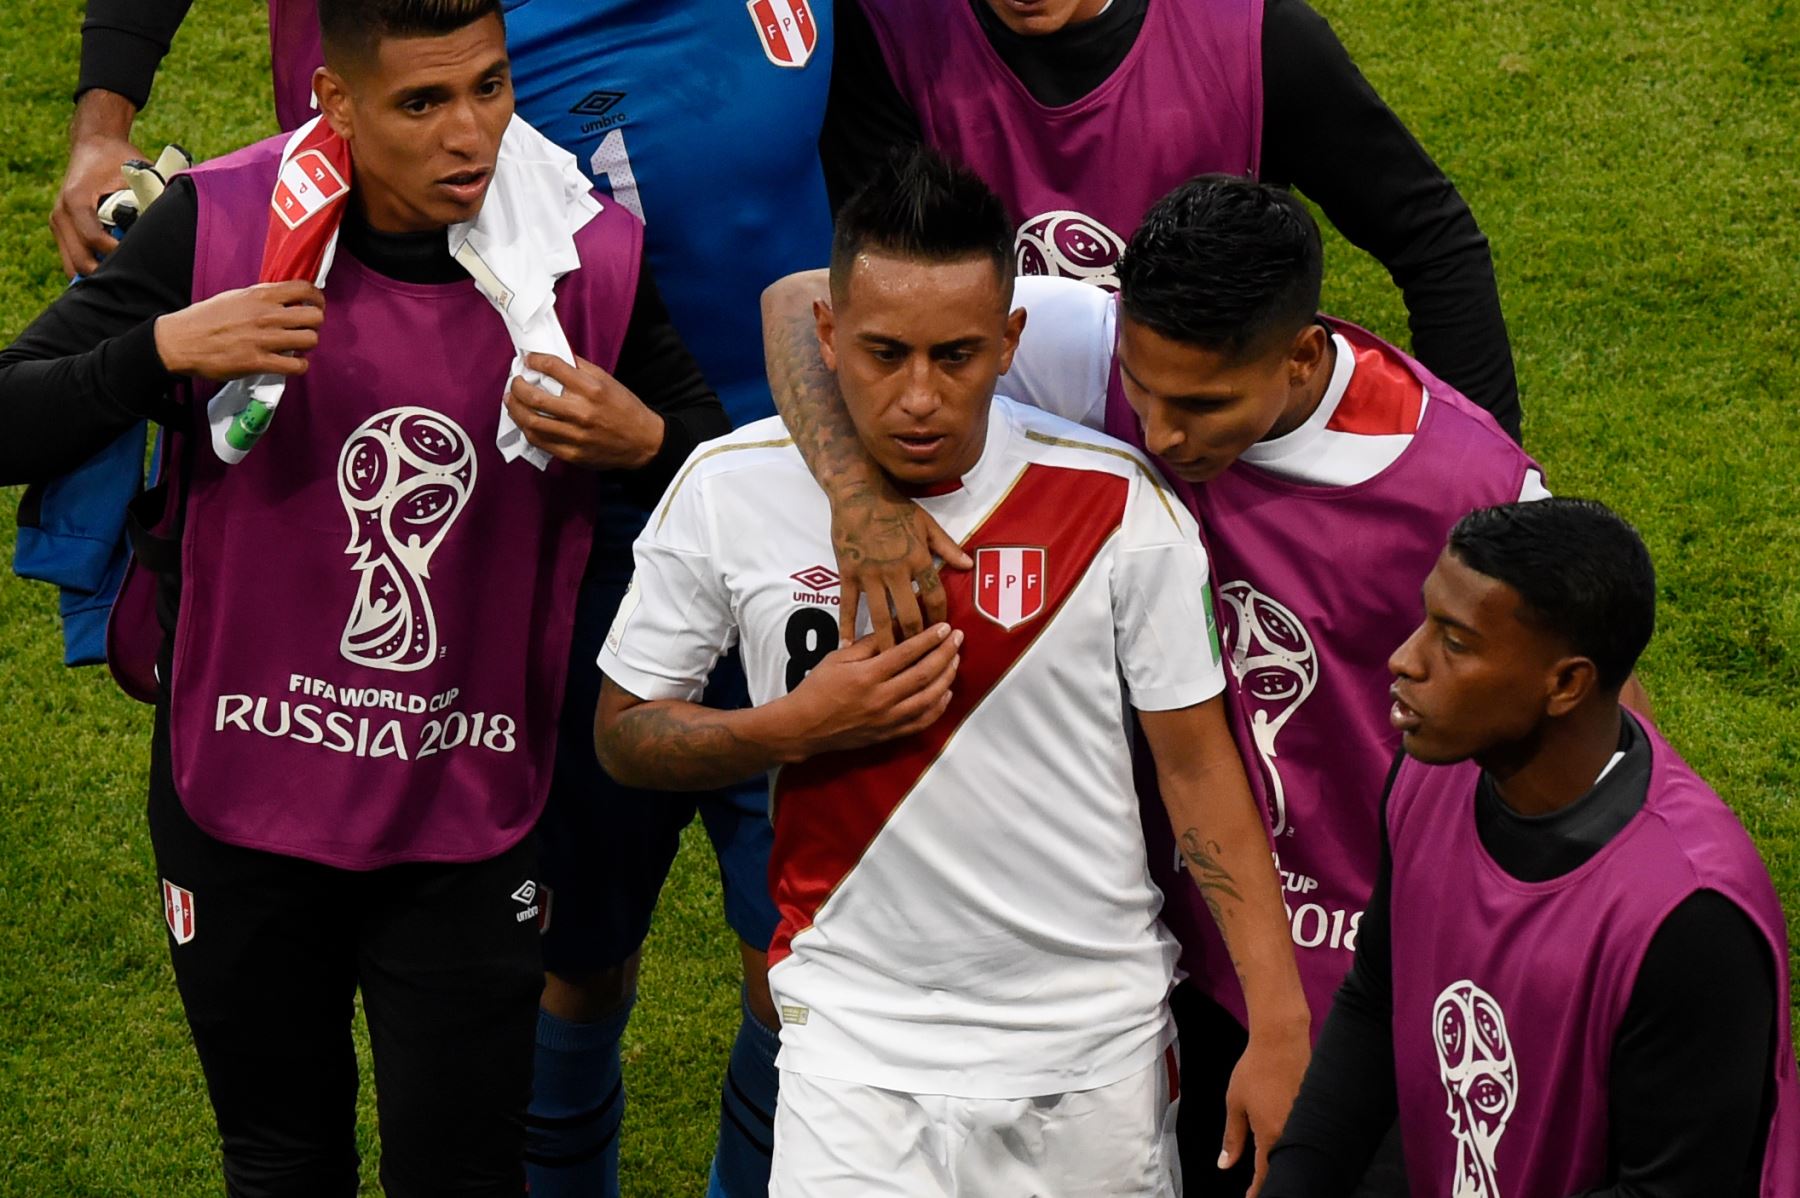 El mediocampista peruano Christian Cueva (C) es consolado por sus compañeros de equipo en el descanso después de perder un penal durante el partido de fútbol del Grupo C de la Copa Rusia 2018 entre Perú y Dinamarca en el Mordovia Arena en Saransk el 16 de junio de 2018.
/ AFP